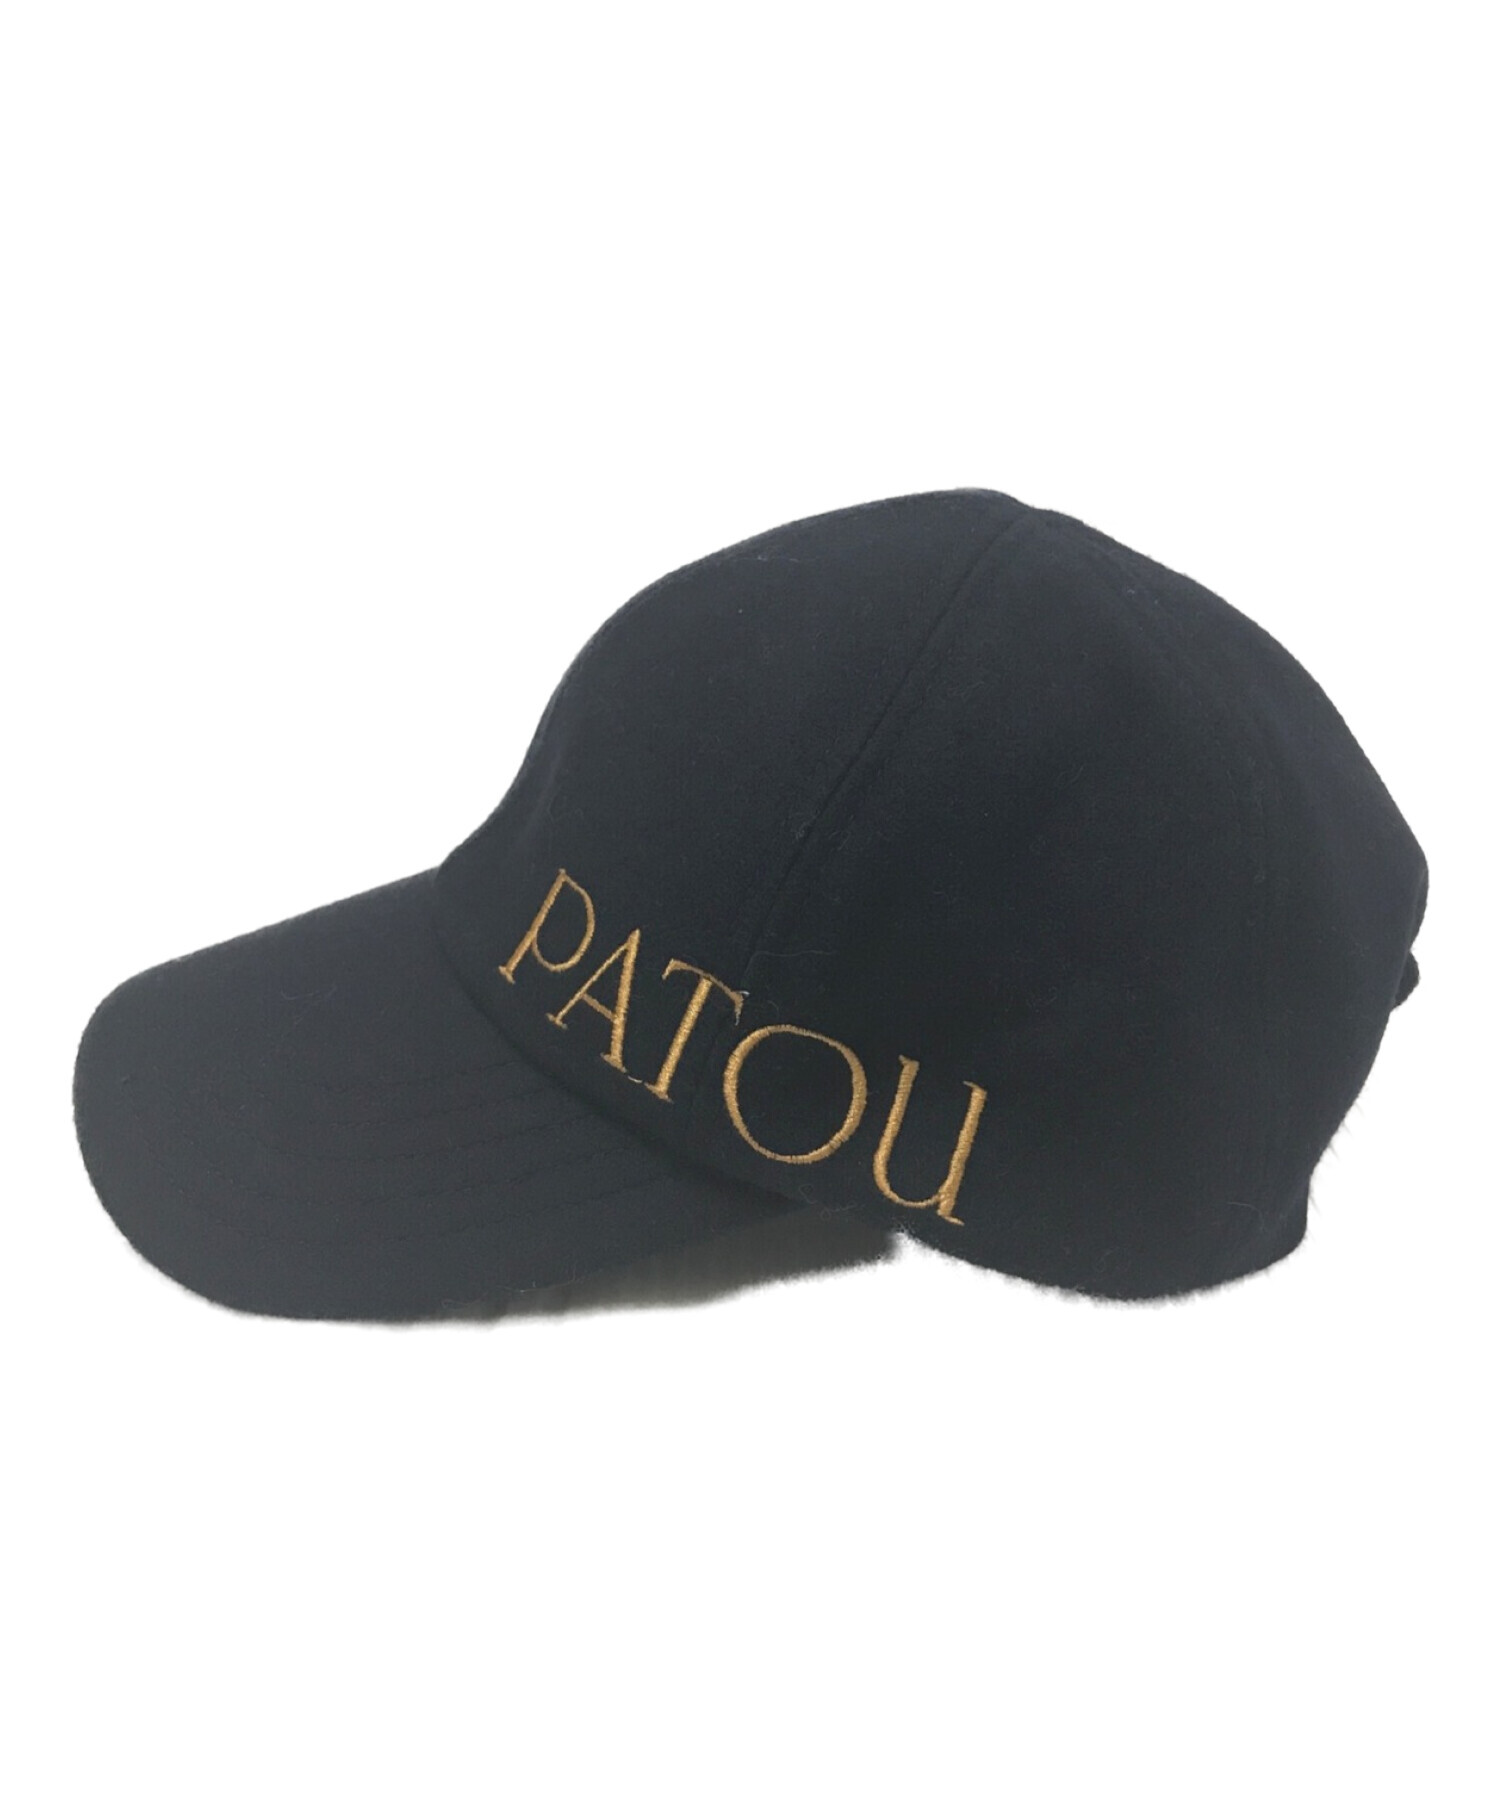 中古・古着通販】patou (パトゥ) embroidered felt cap ネイビー 